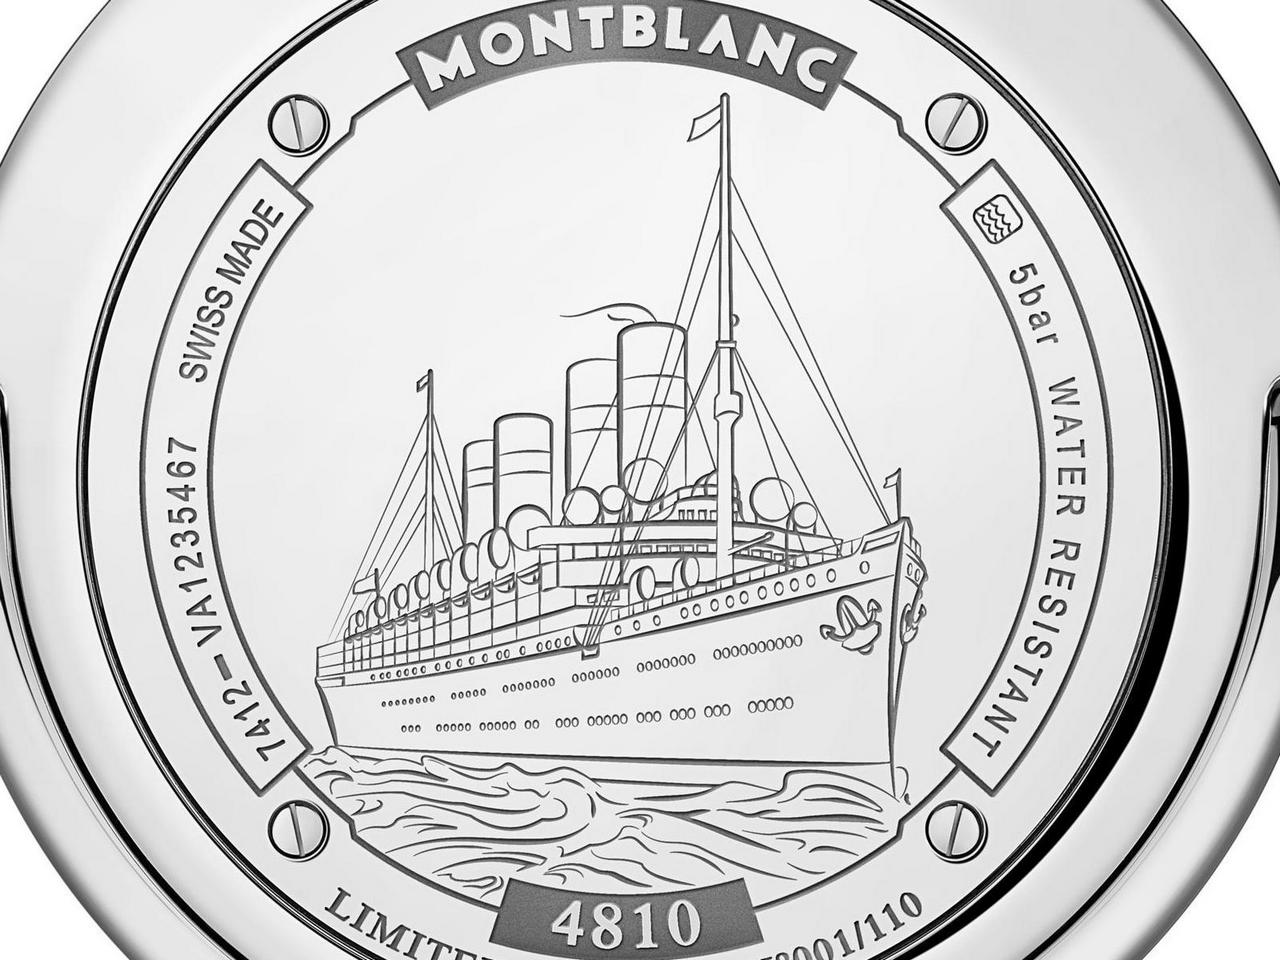 Montblanc-orbis-terrarum-pocket-watch-110-Years-Edition-sihh-2016_0-100_4